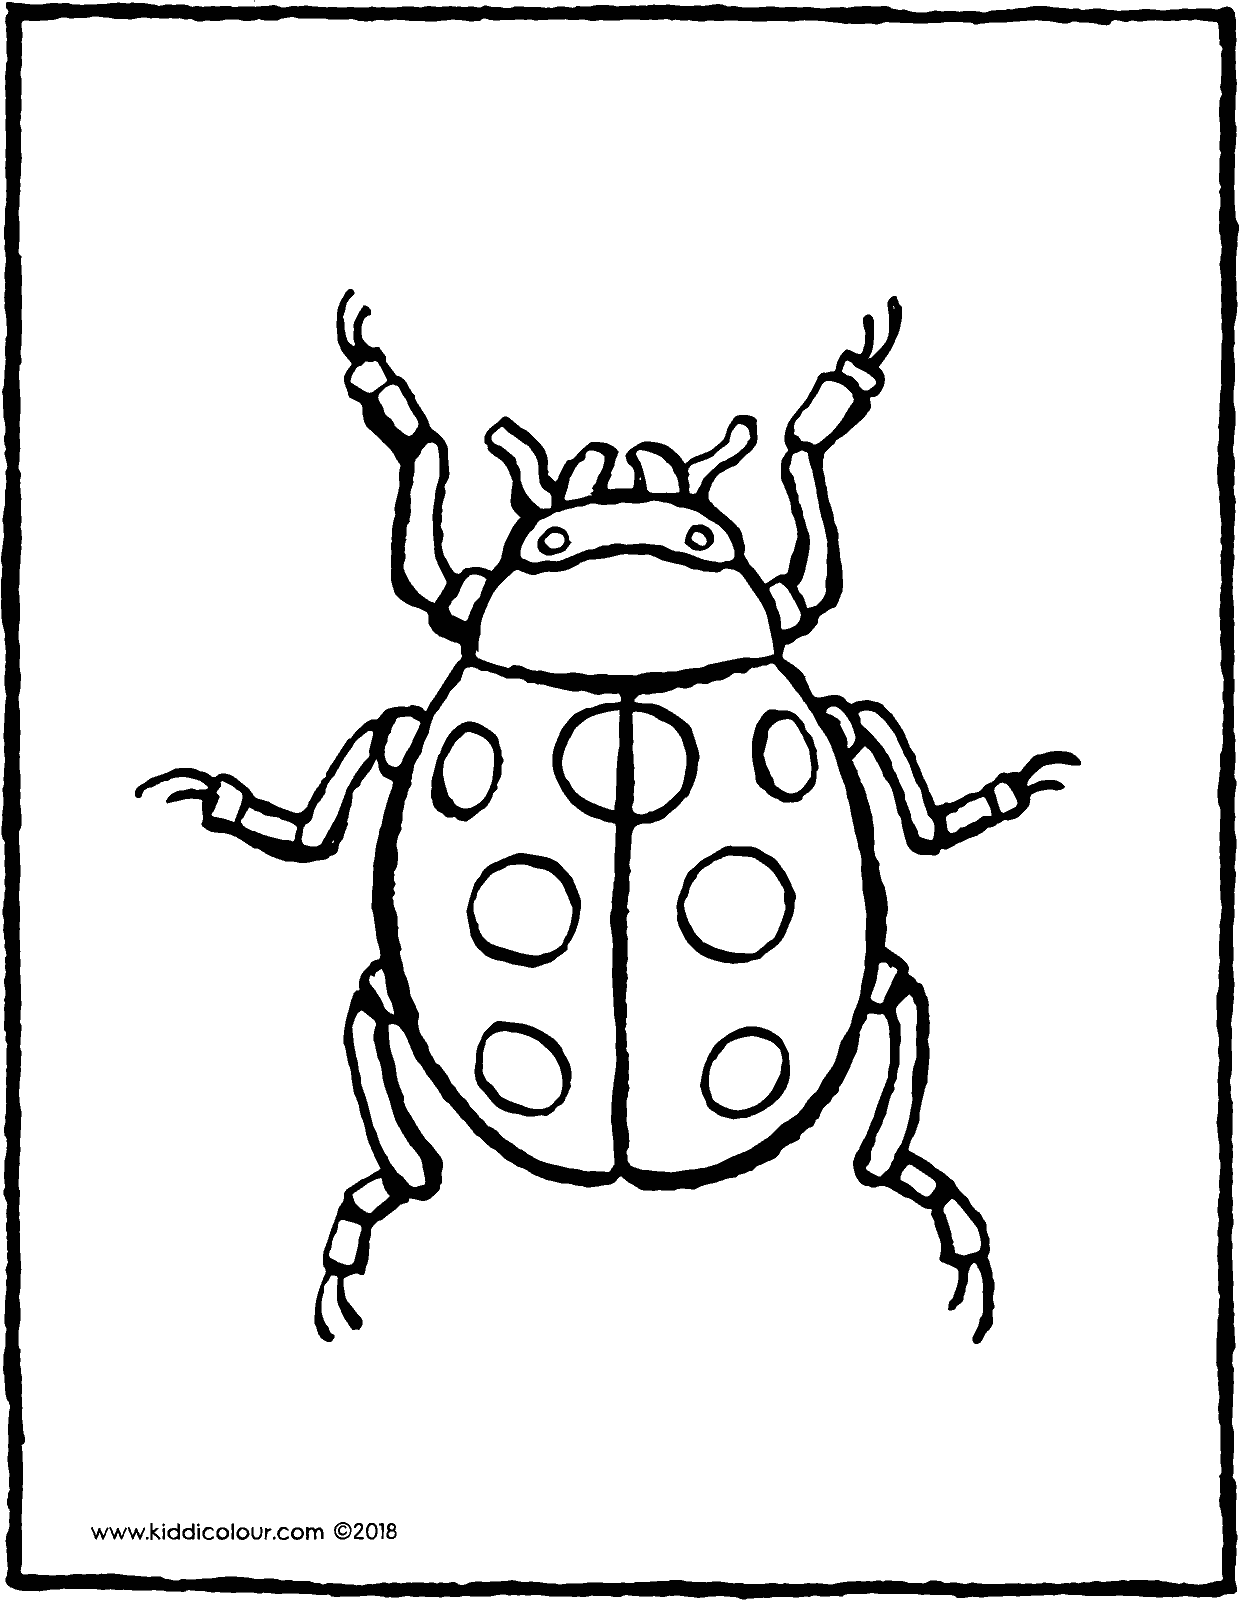 ladybird - kiddicolour